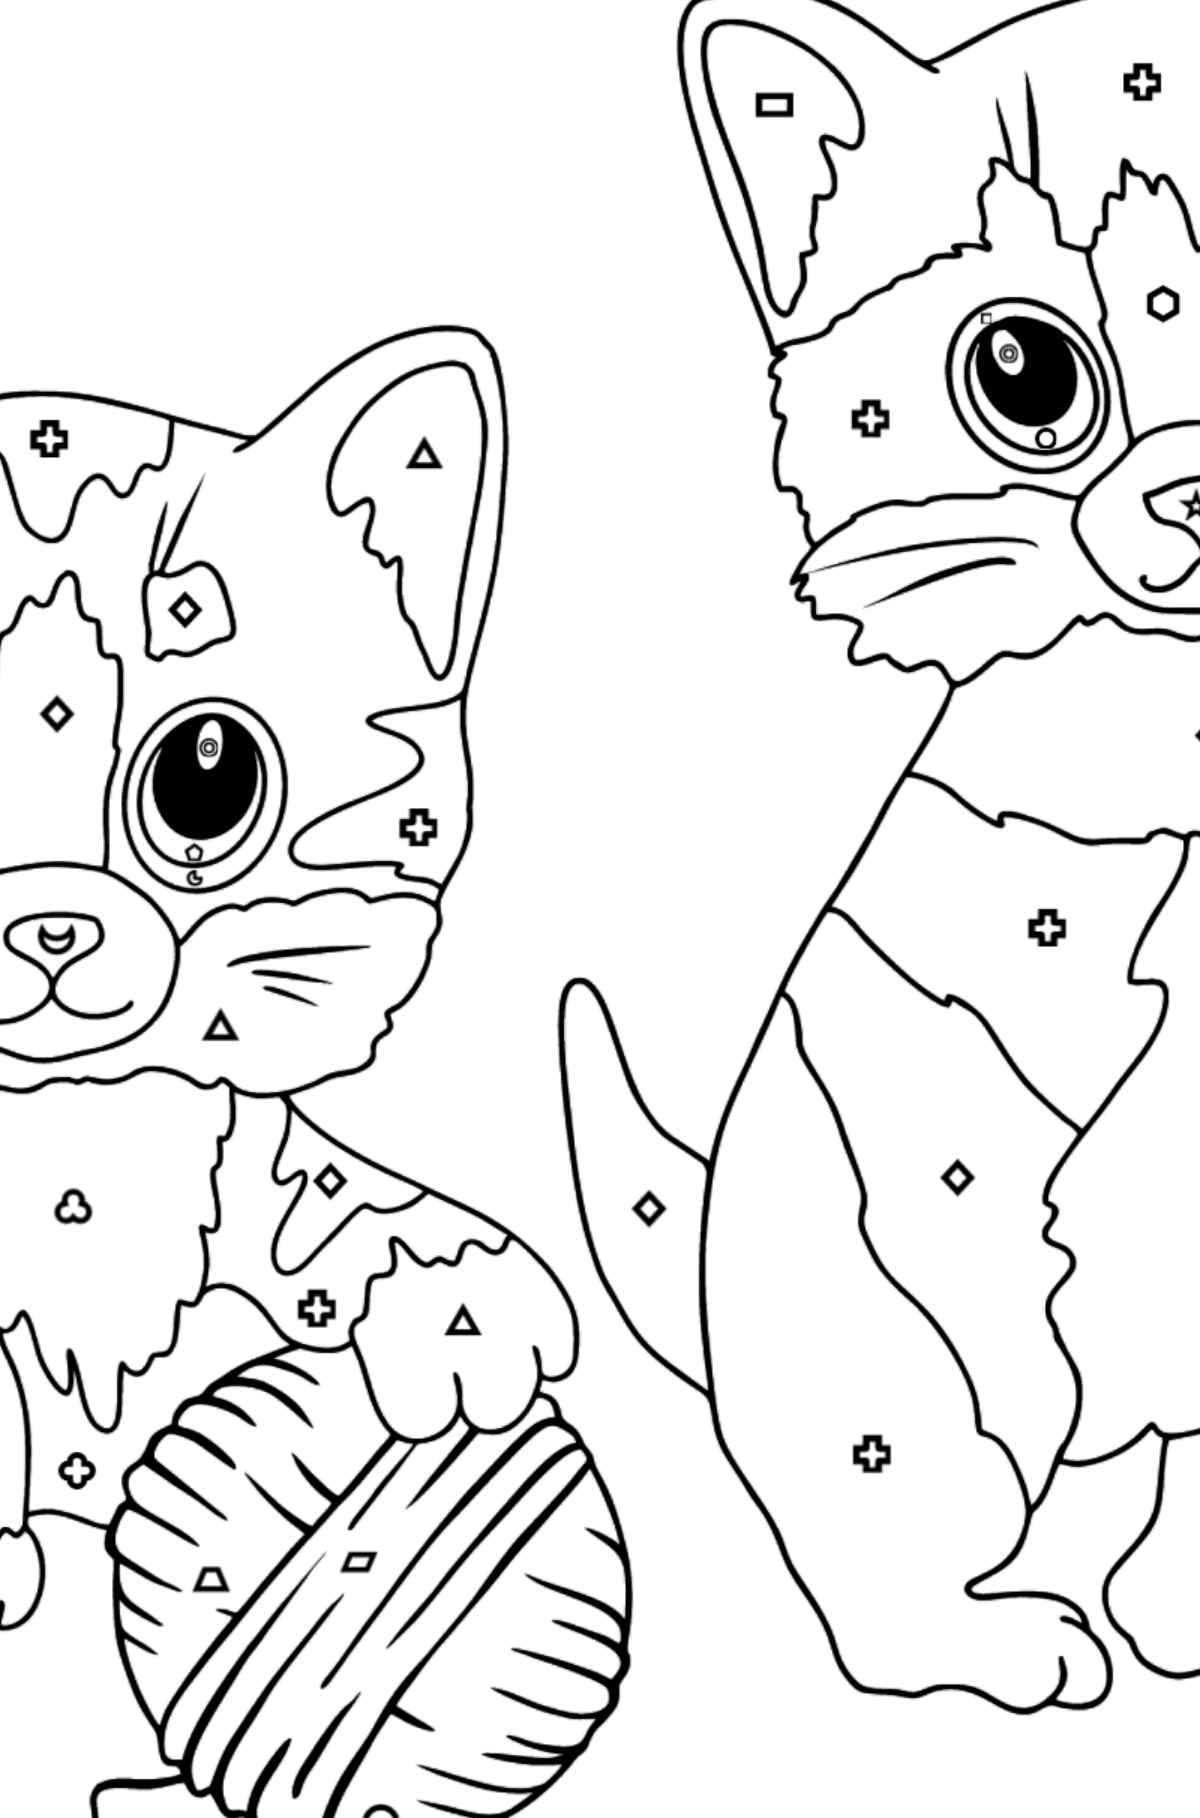 Målarbild roliga kattungar (svår) - Färgläggning av geometriska former För barn